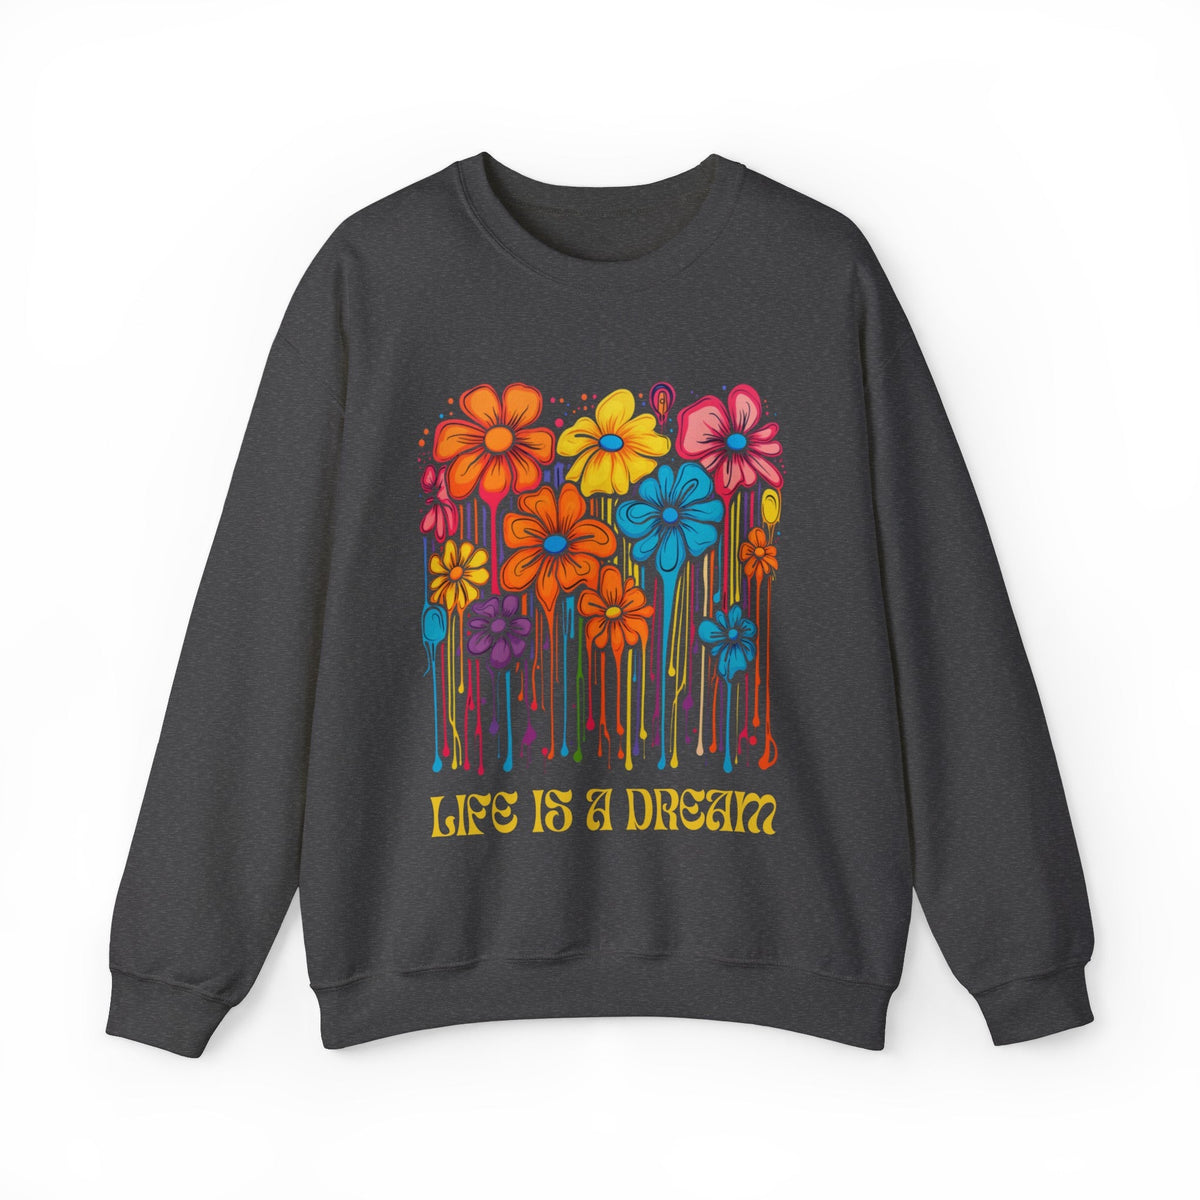 Life is a Dream Acid Flowers Sweatshirt - Goth Cloth Co.Sweatshirt32648786933962910574